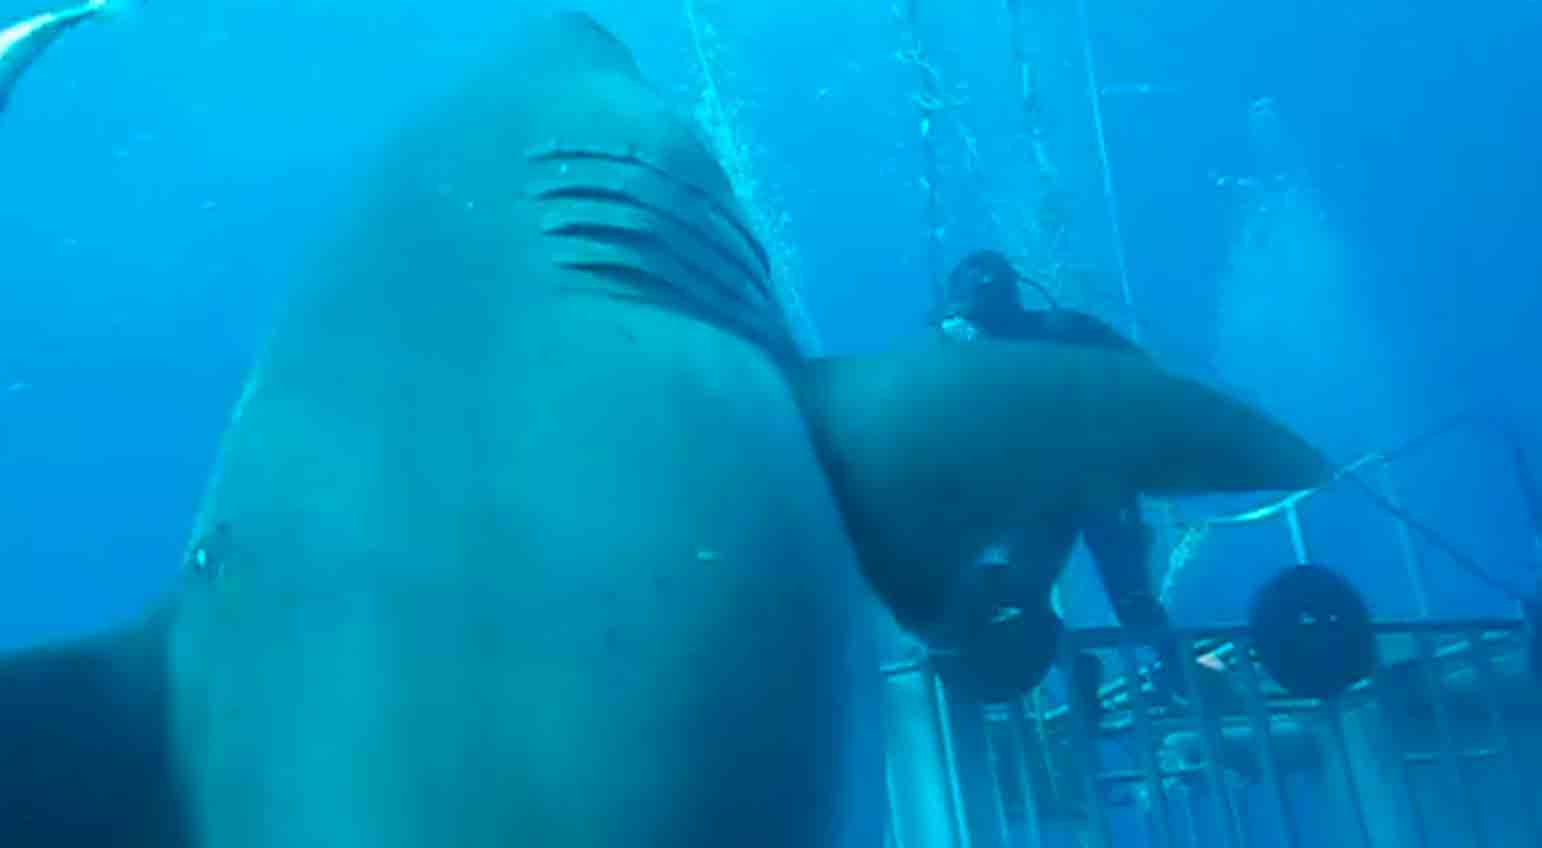 Βίντεο: Γνωρίστε τον Deep Blue, τον μεγαλύτερο λευκό καρχαρία στον κόσμο.Φωτογραφίες και βίντεο: Αναδημοσίευση από Facebook @amaukua